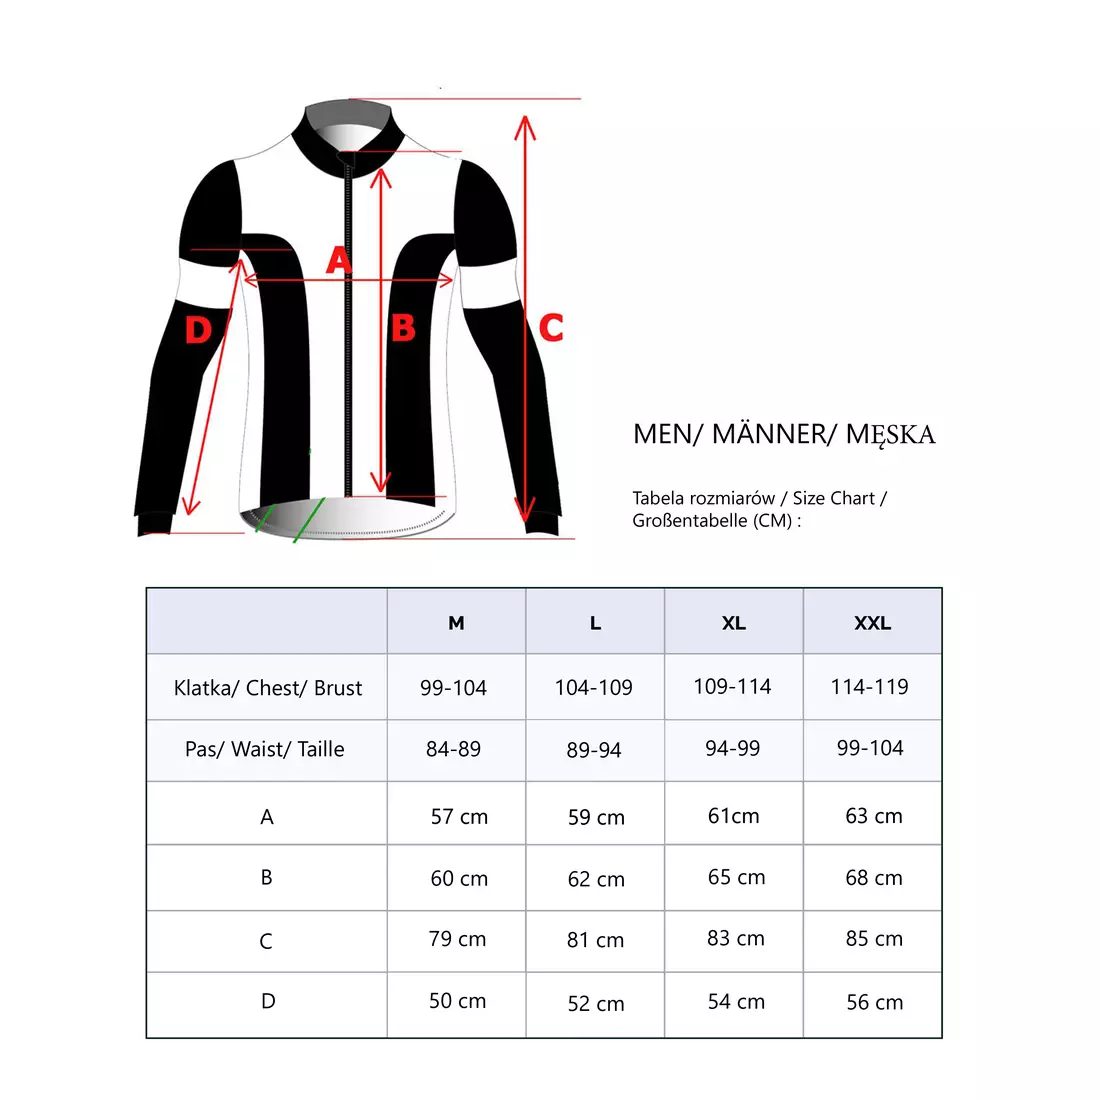 Jachetă softshell DEKO KOLUN pentru bicicletă negru-verde fluor